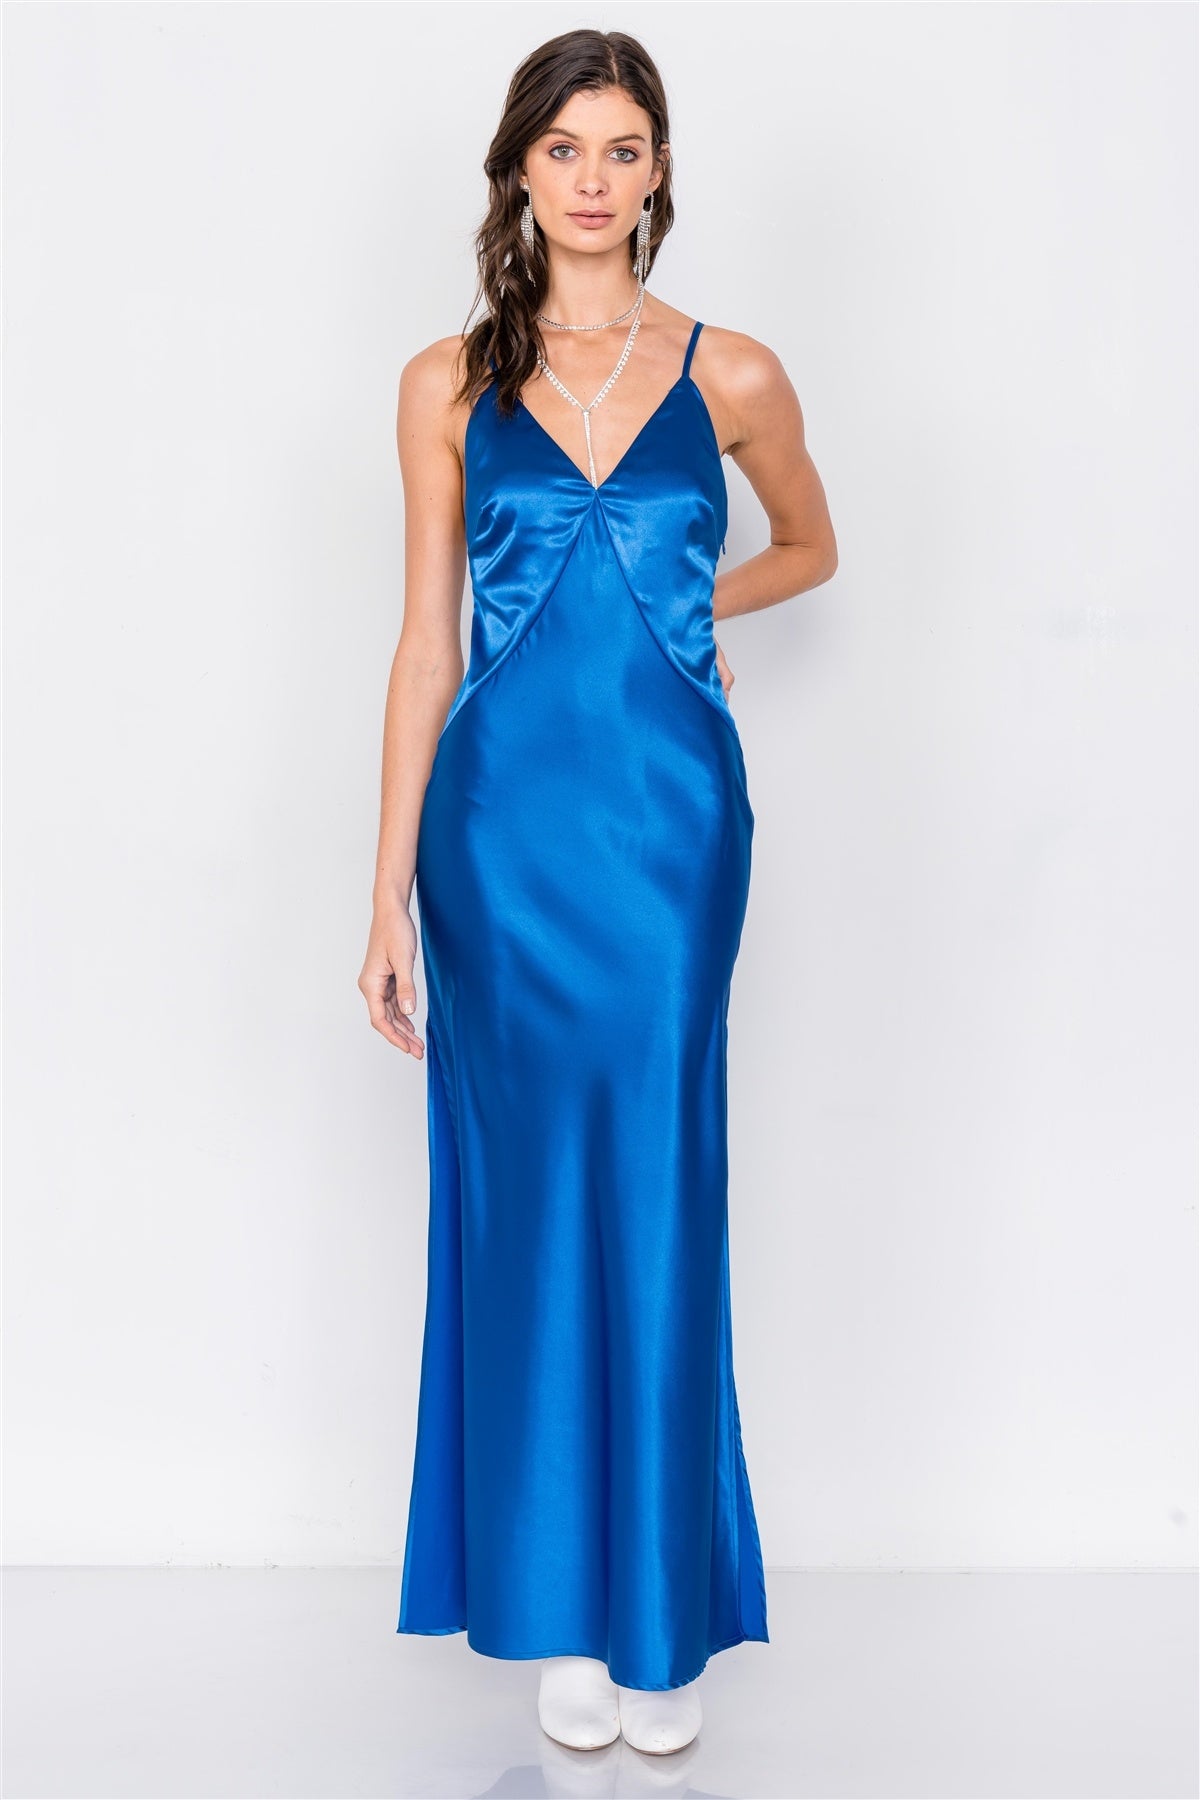 Satin Elegant Double Slit Sleeveless Maxi Dress - Keep It Tees Shop